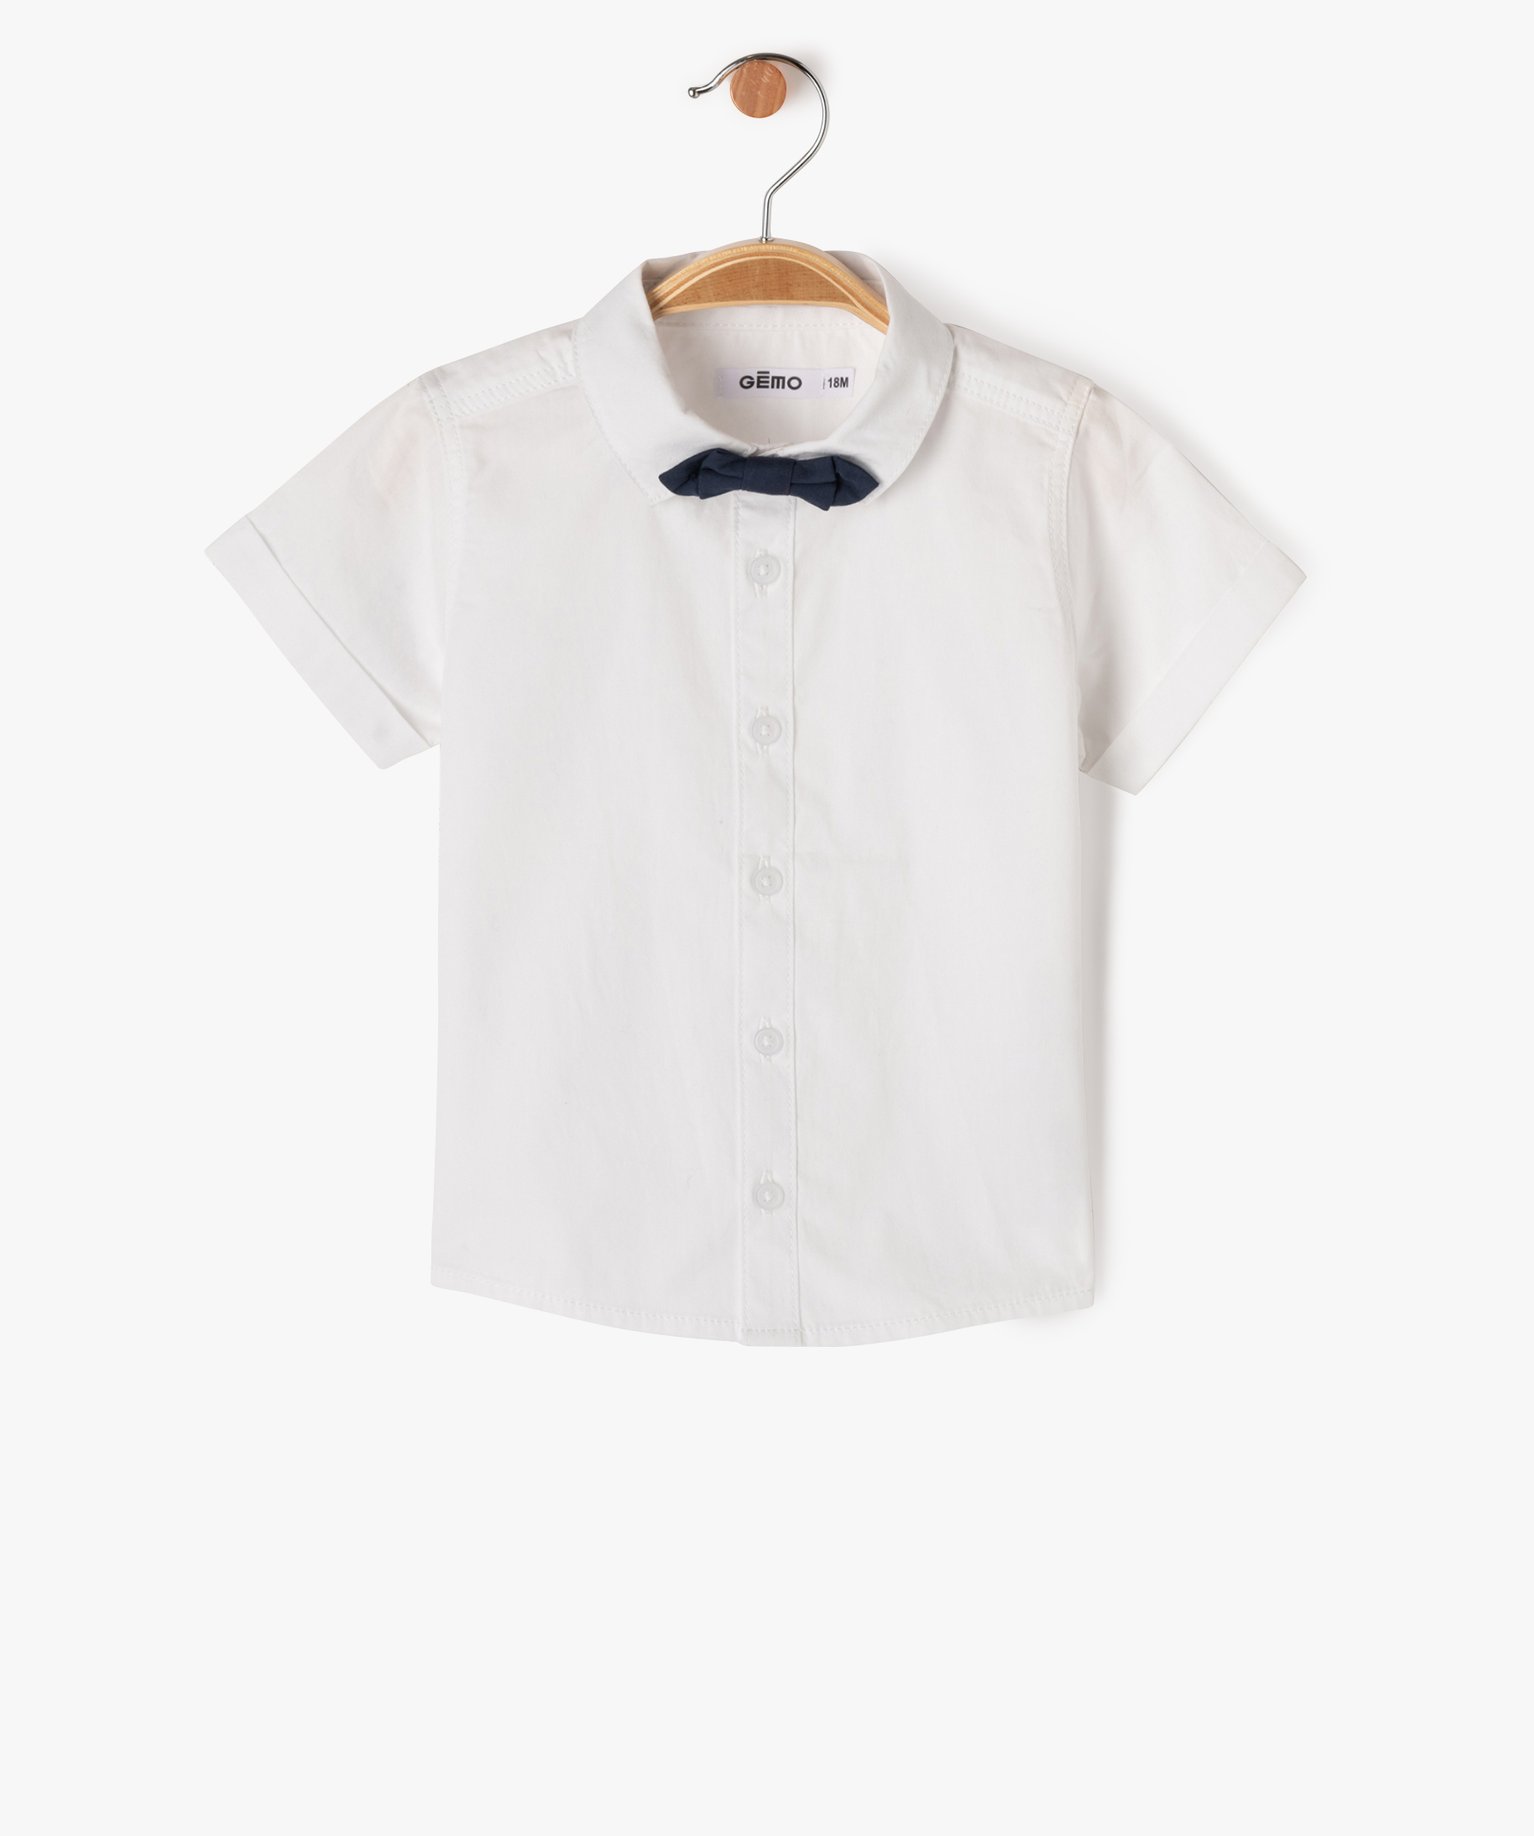 Chemise à manches courtes avec noeud papillon bébé garçon - 6M - blanc - GEMO